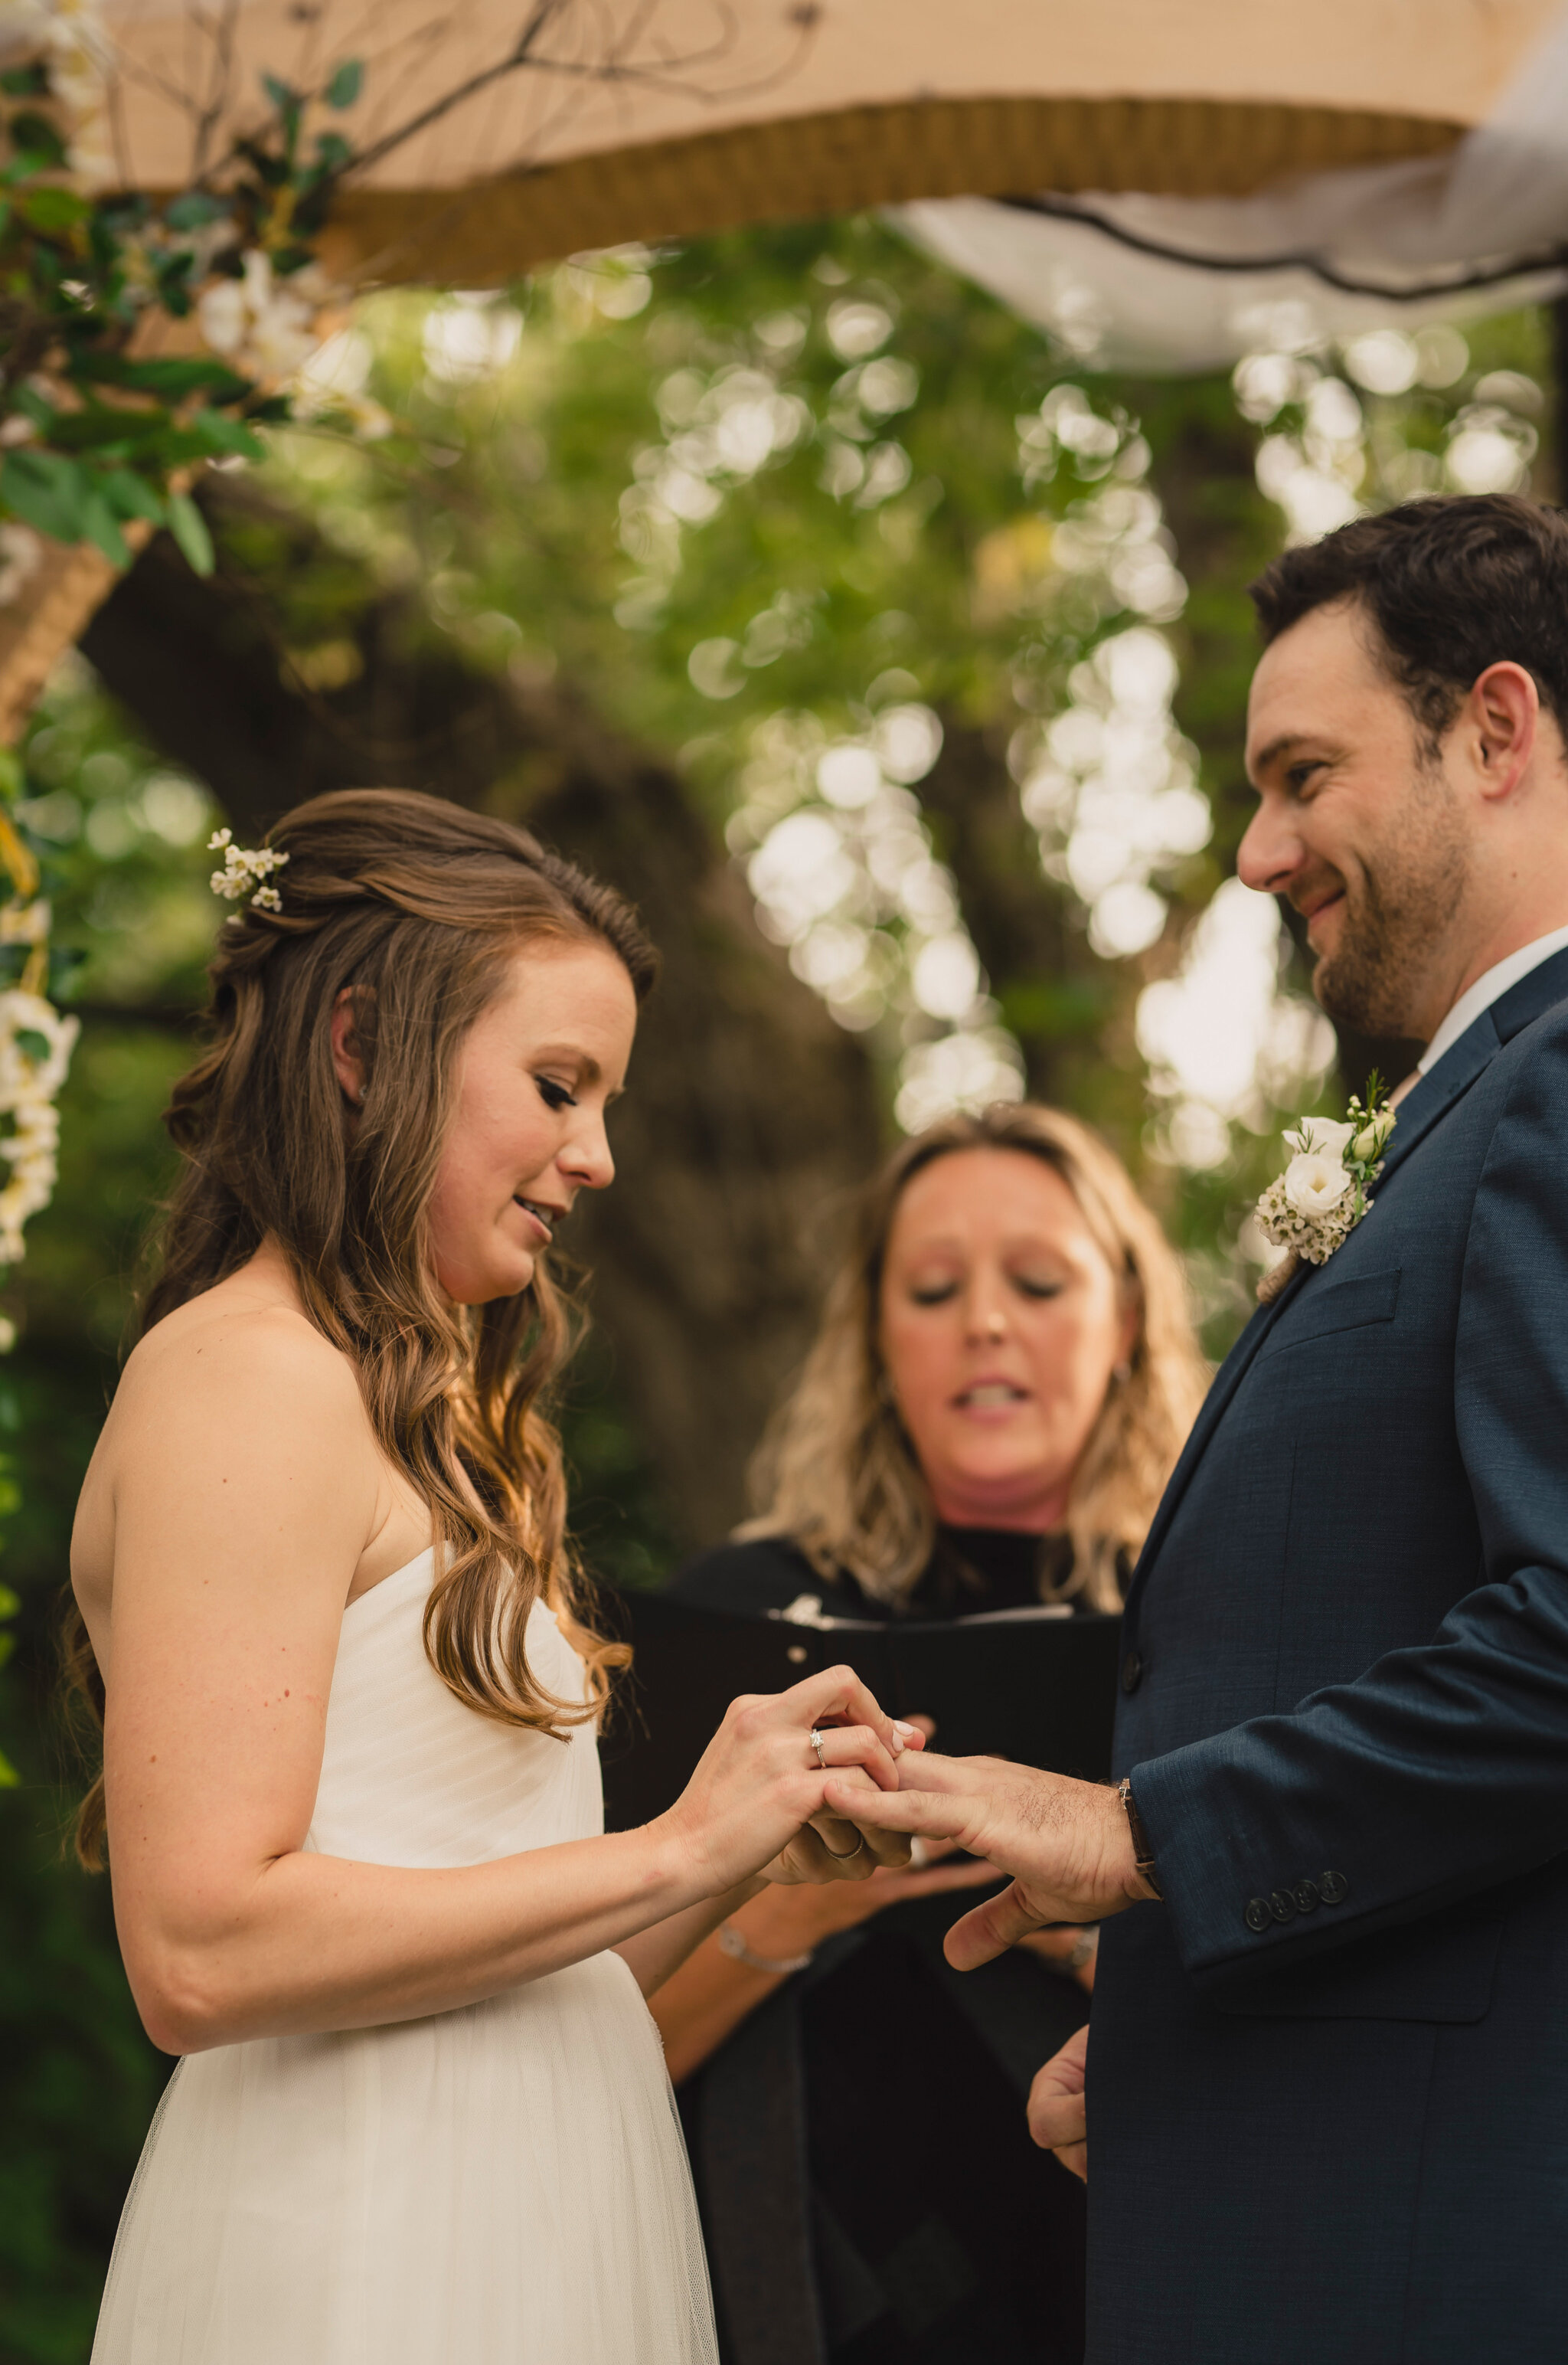 exchanging rings at intimate backyard south georgian bay wedding